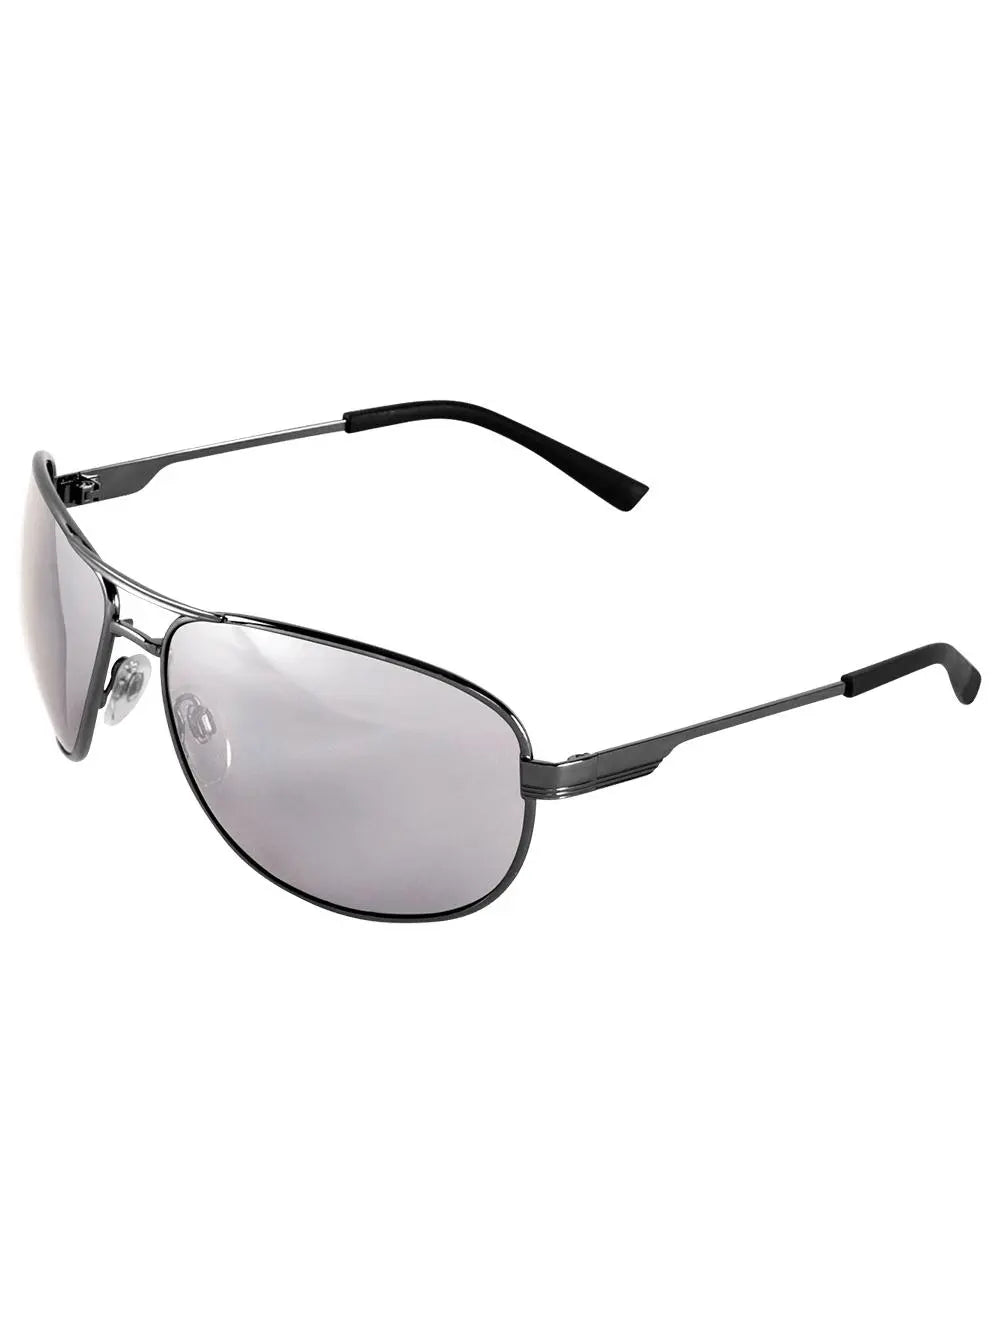 BULLHEAD SAFETY - Gafas de seguridad con lentes de espejo en acero plateado, gris plomo